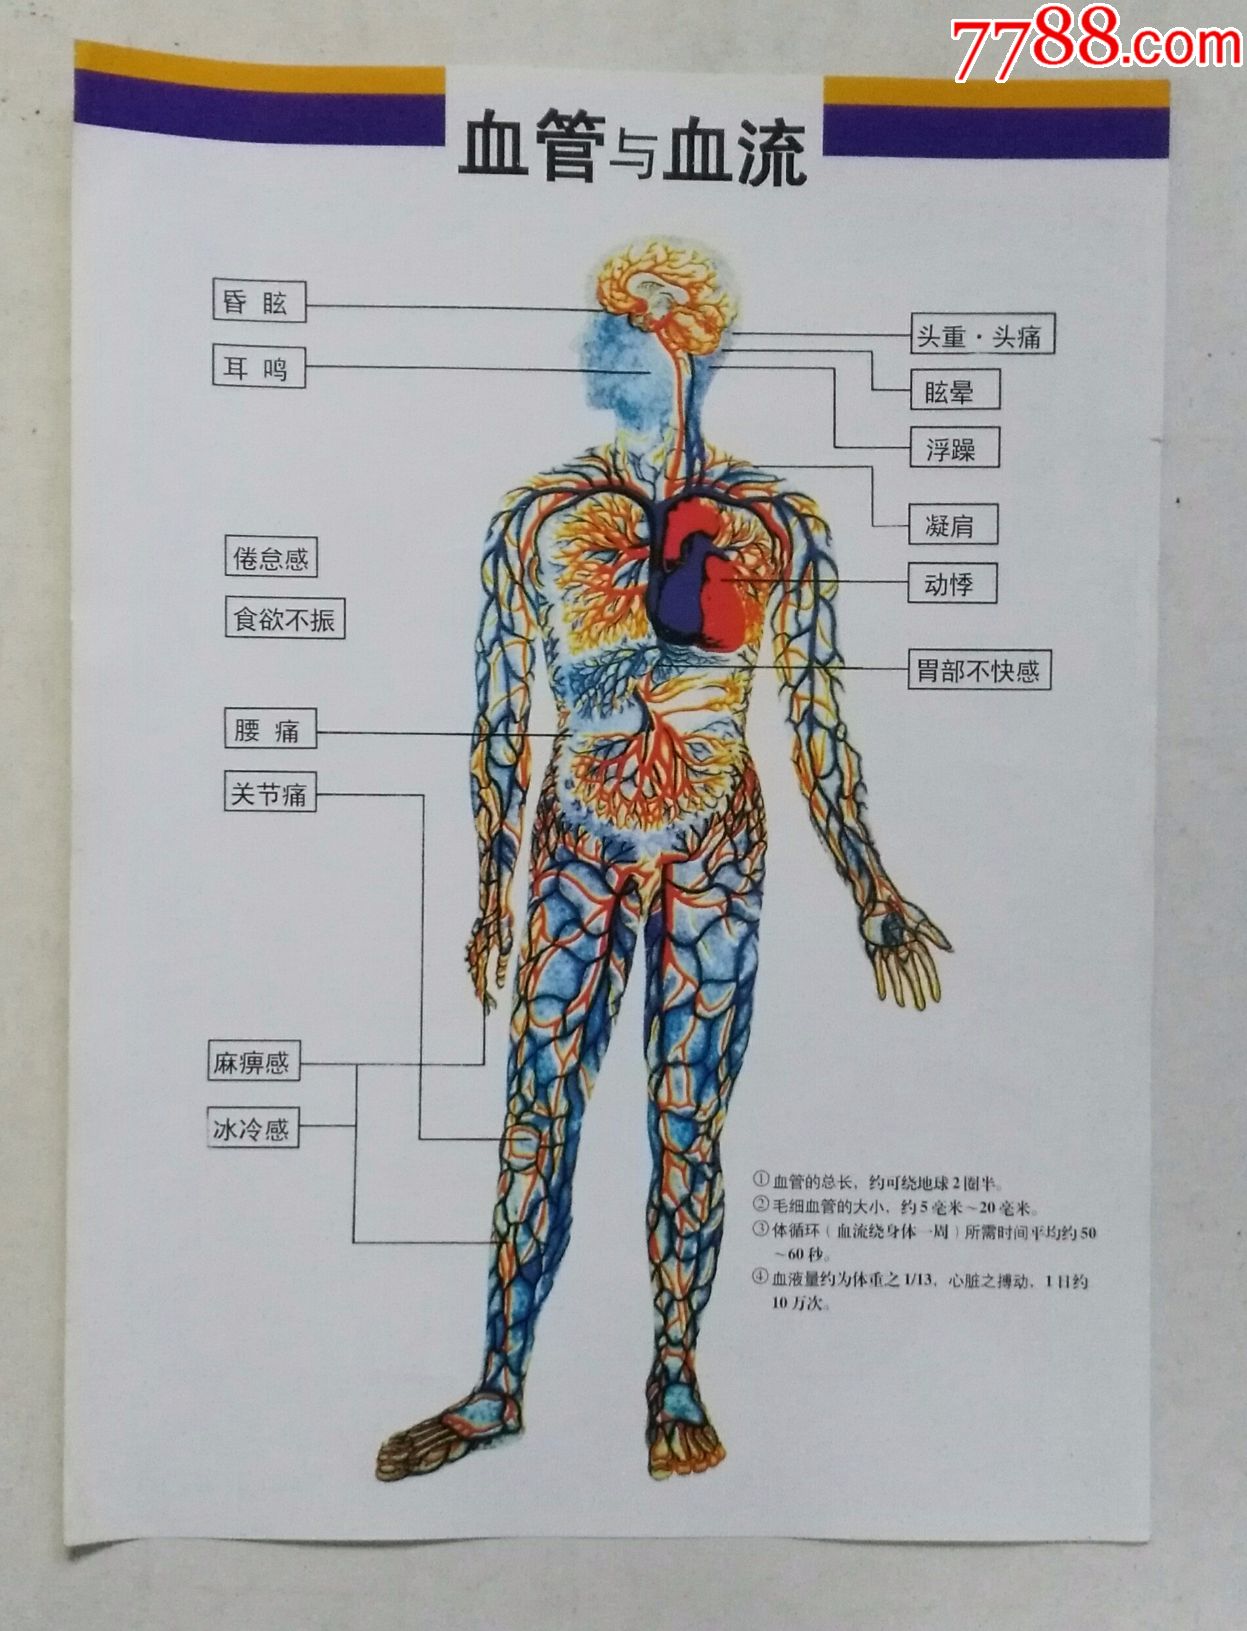 医用:神经系统,血管血流图示两张